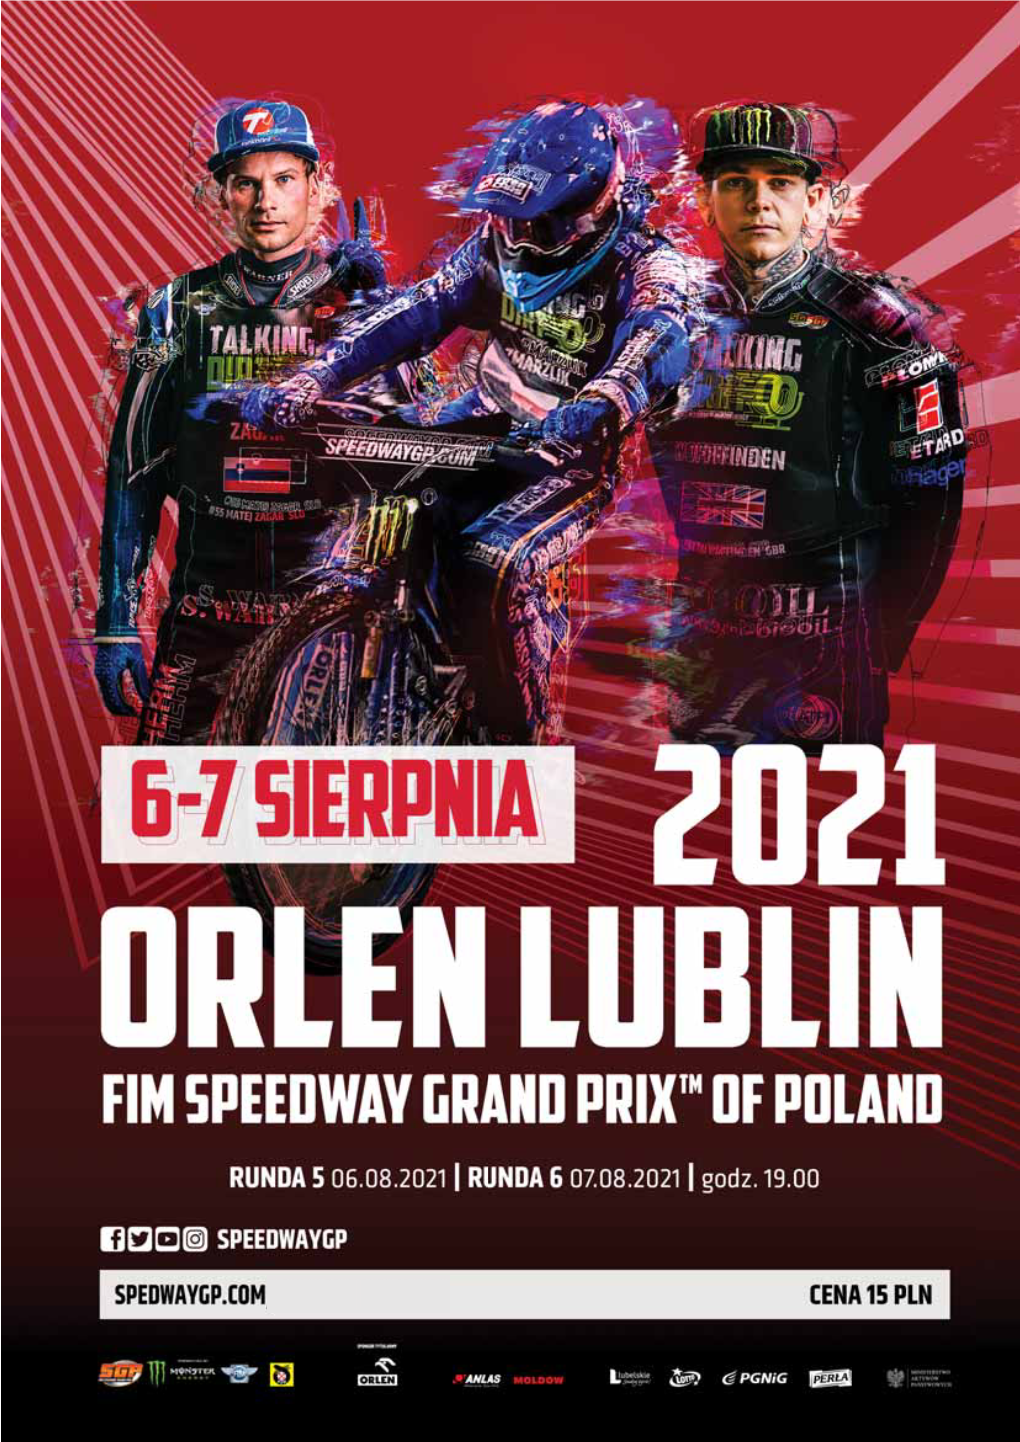 Olen Lublin FIM Speedway Grand Prix of Poland